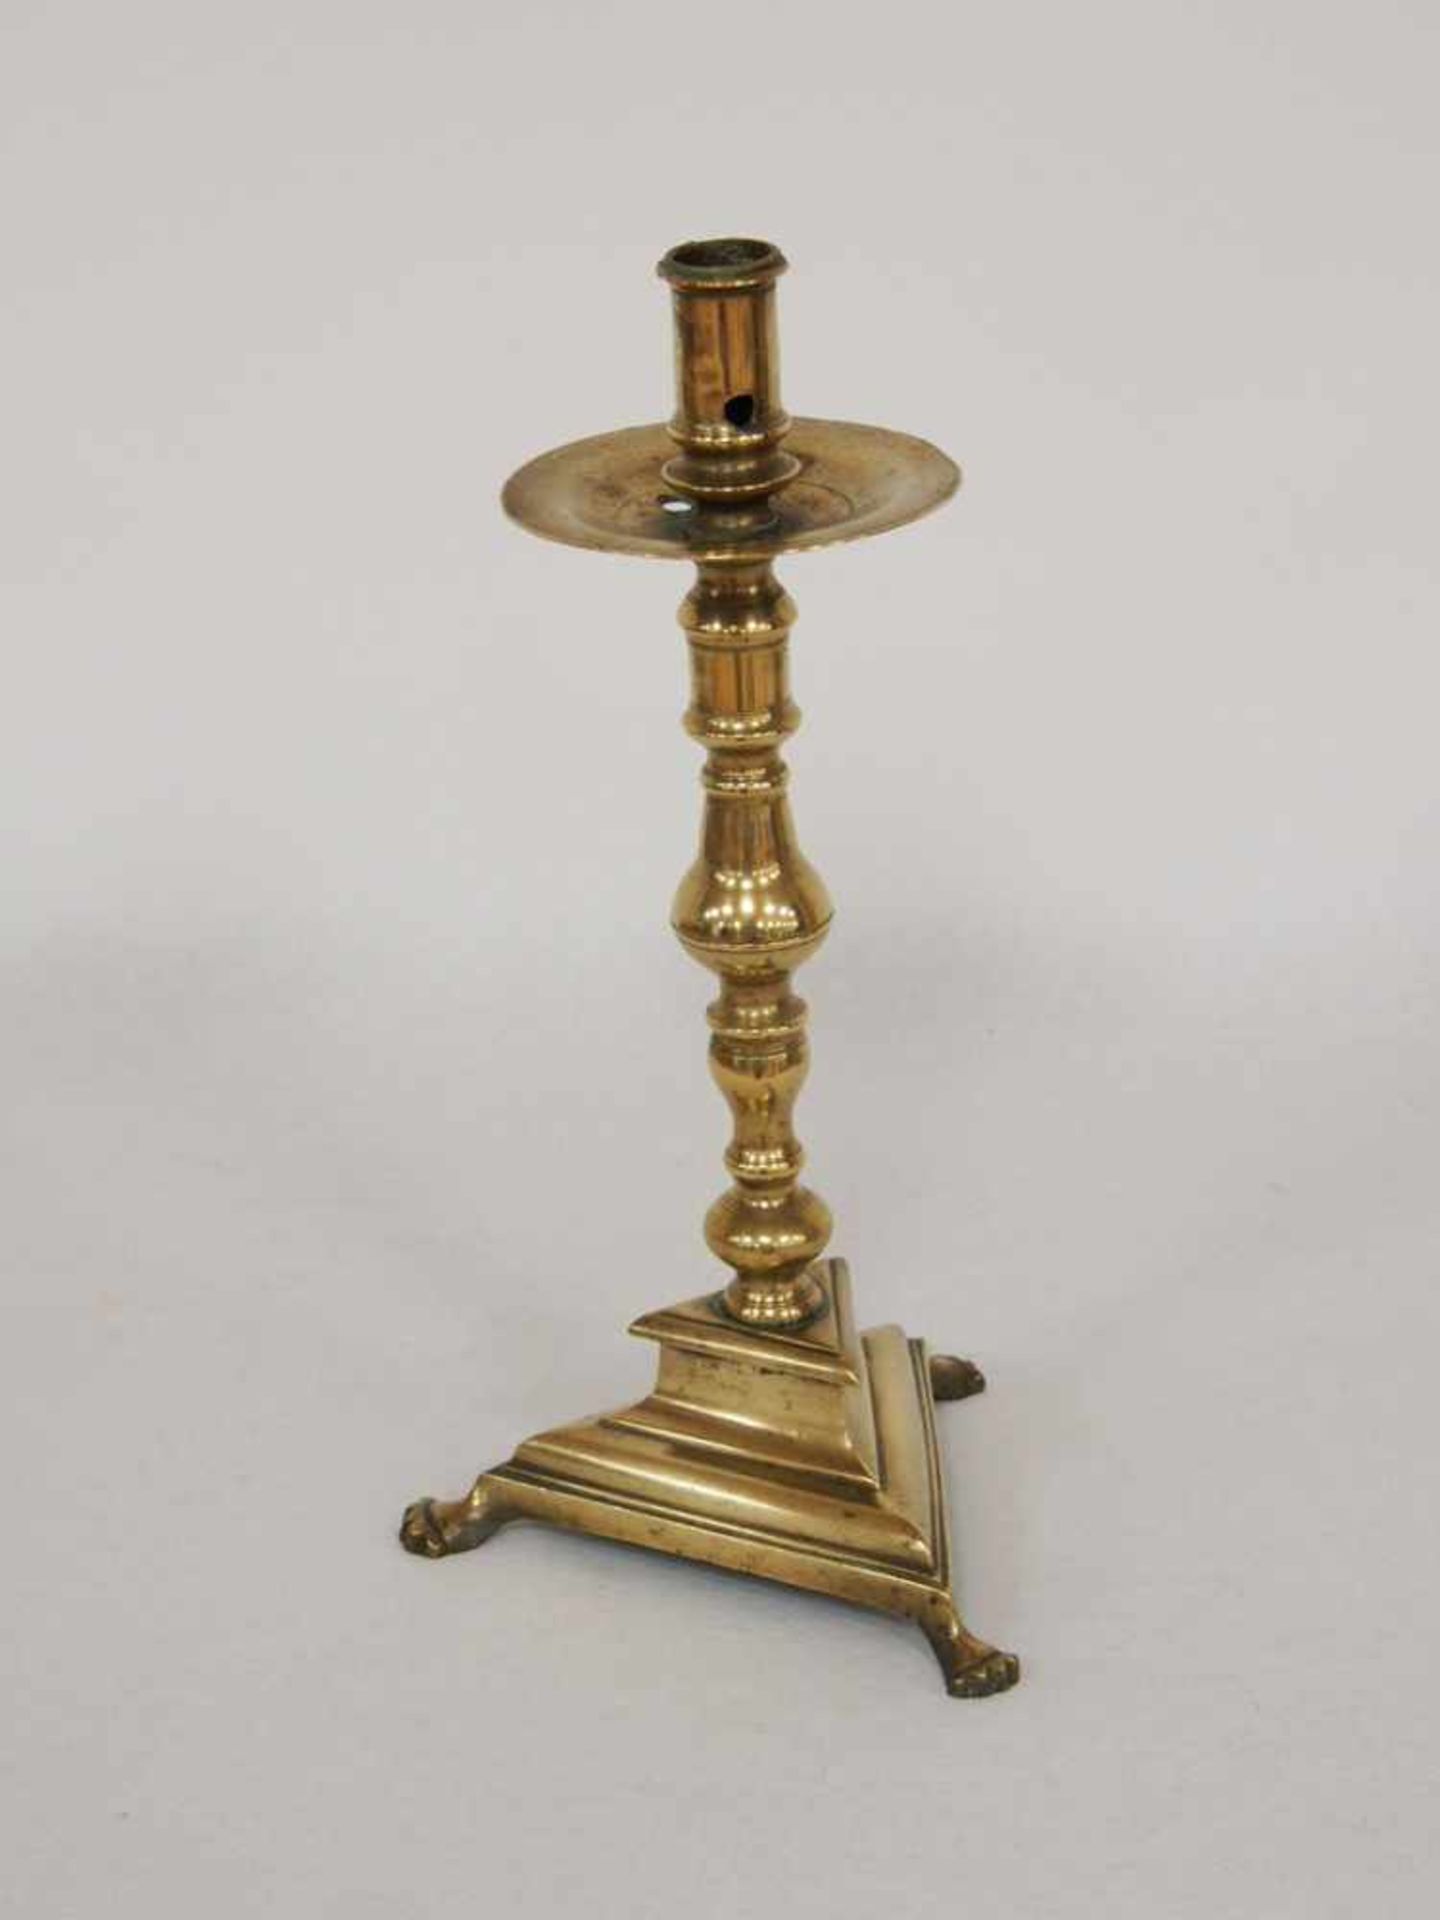 Kerzenleuchter mit TatzenfüssenMessing, Höhe 33 cm, Deutsch 17. Jahrhundert- - -25.00 % buyer's - Bild 2 aus 2